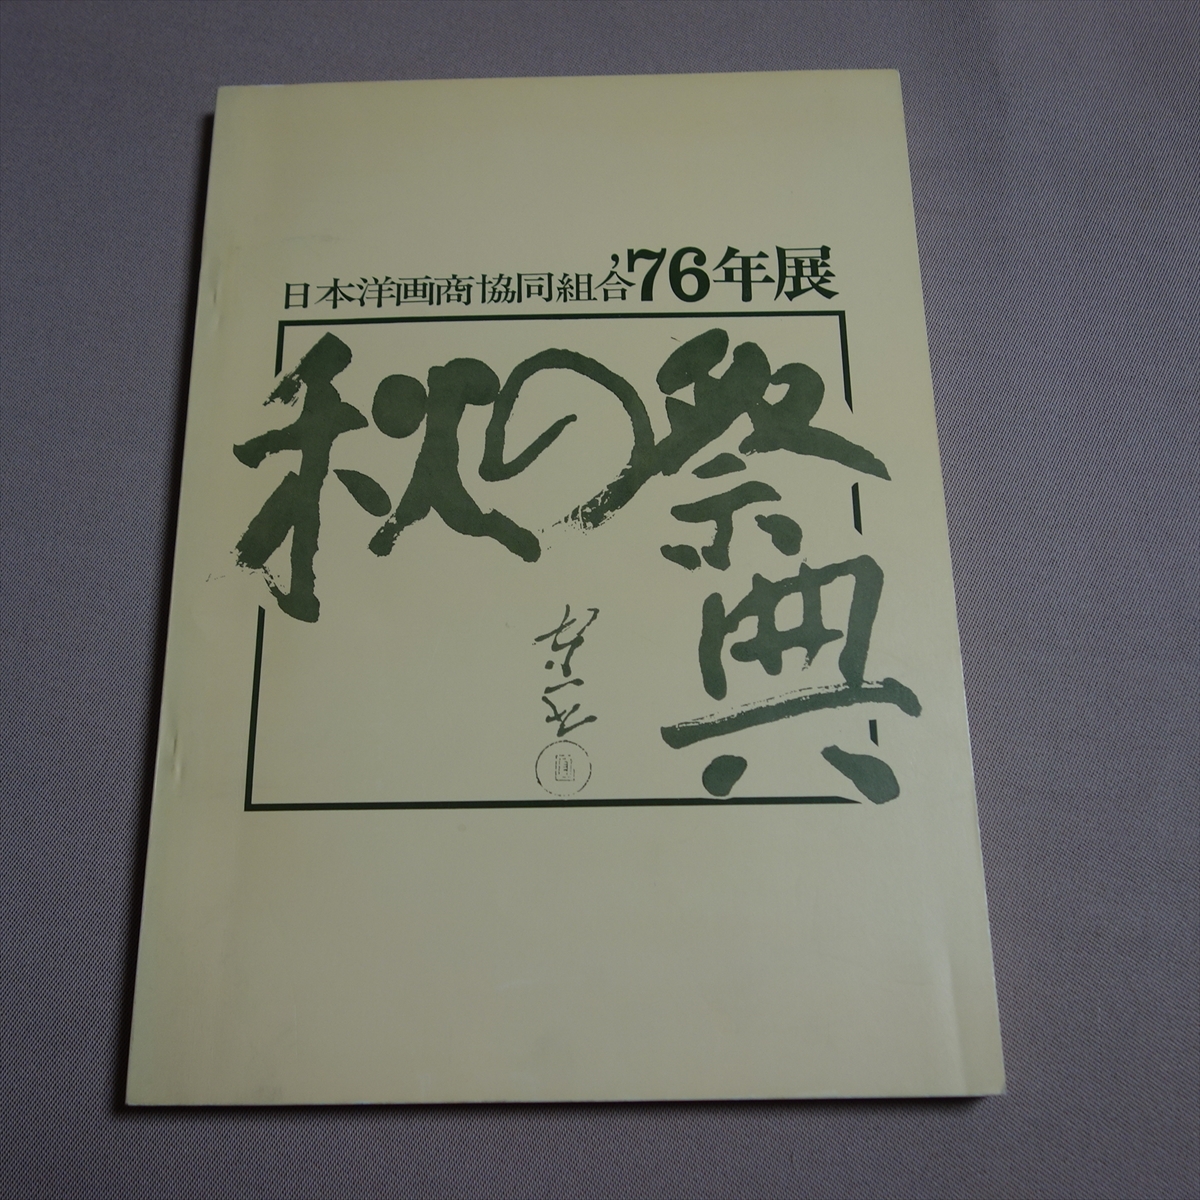 معرض جمعية تجار الفن الغربي الياباني '76 مهرجان الخريف / كتالوج شوا, تلوين, كتاب فن, مجموعة, فهرس